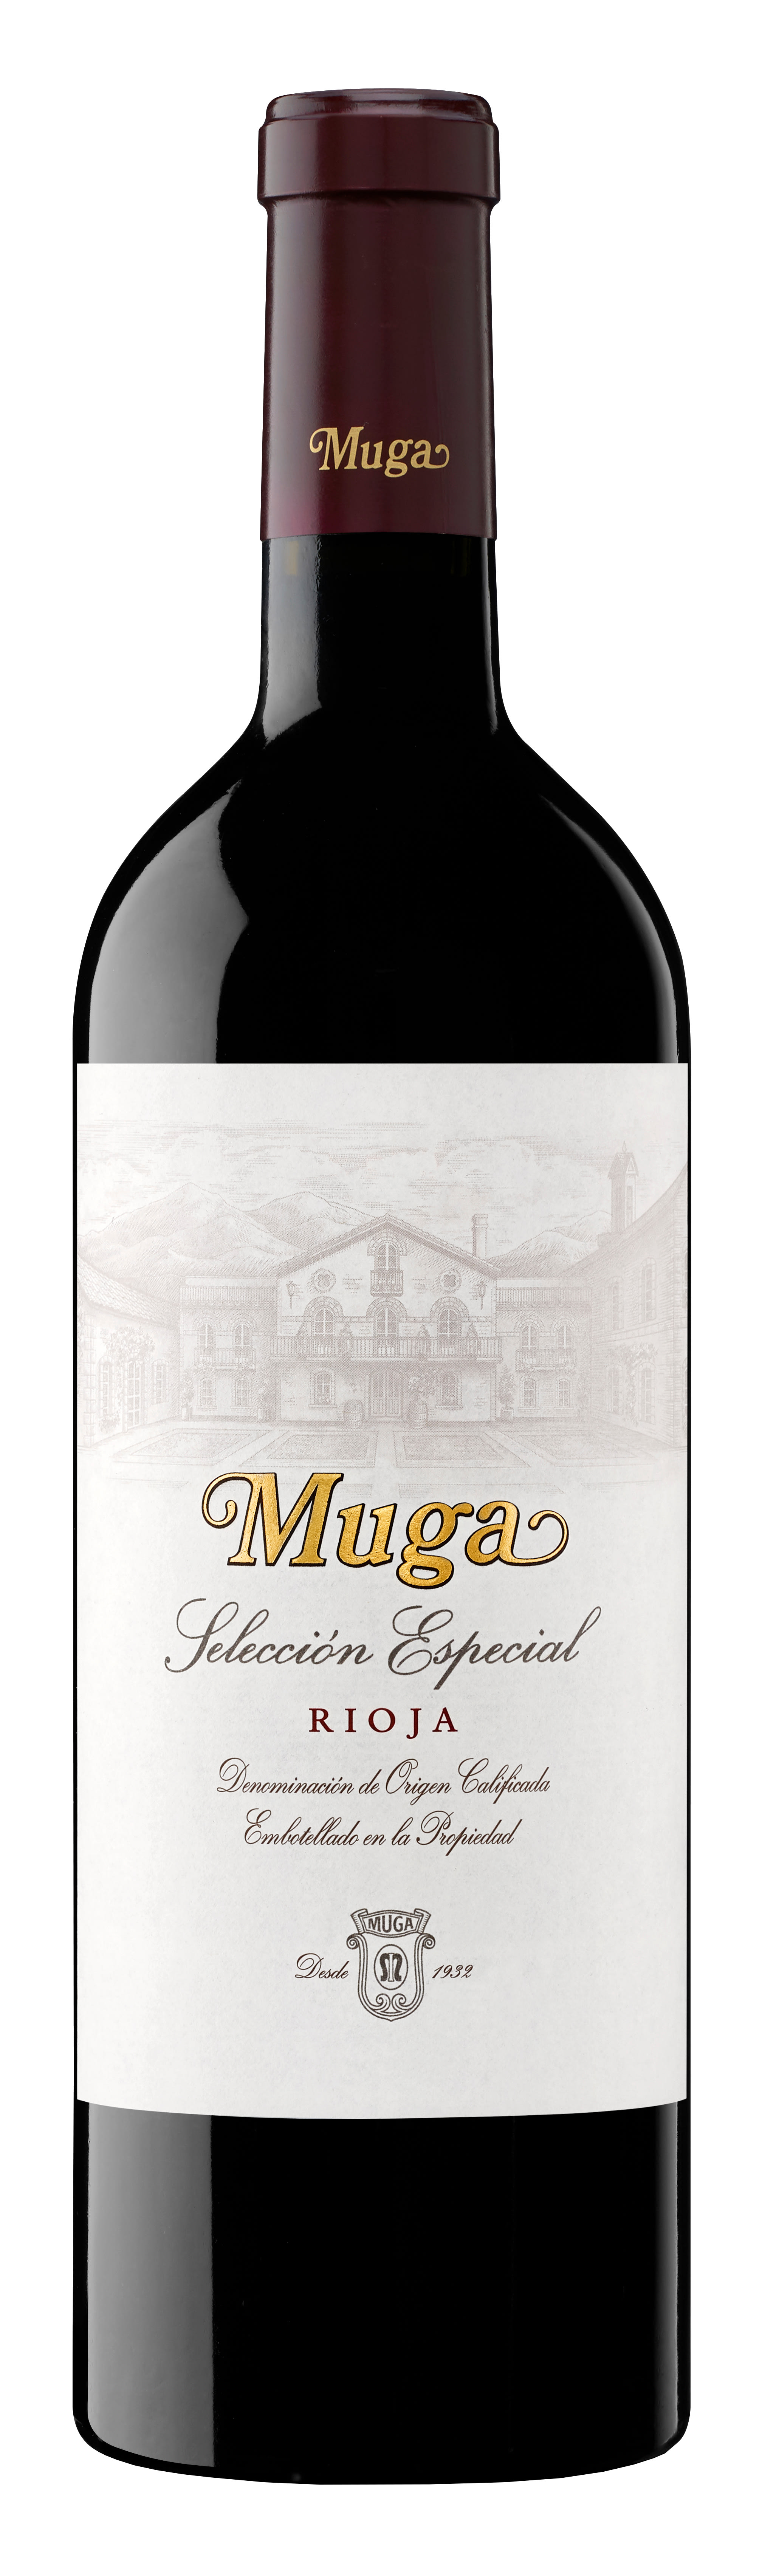 Bodegas Muga - Rioja Seleccion Especial 2019 (750)